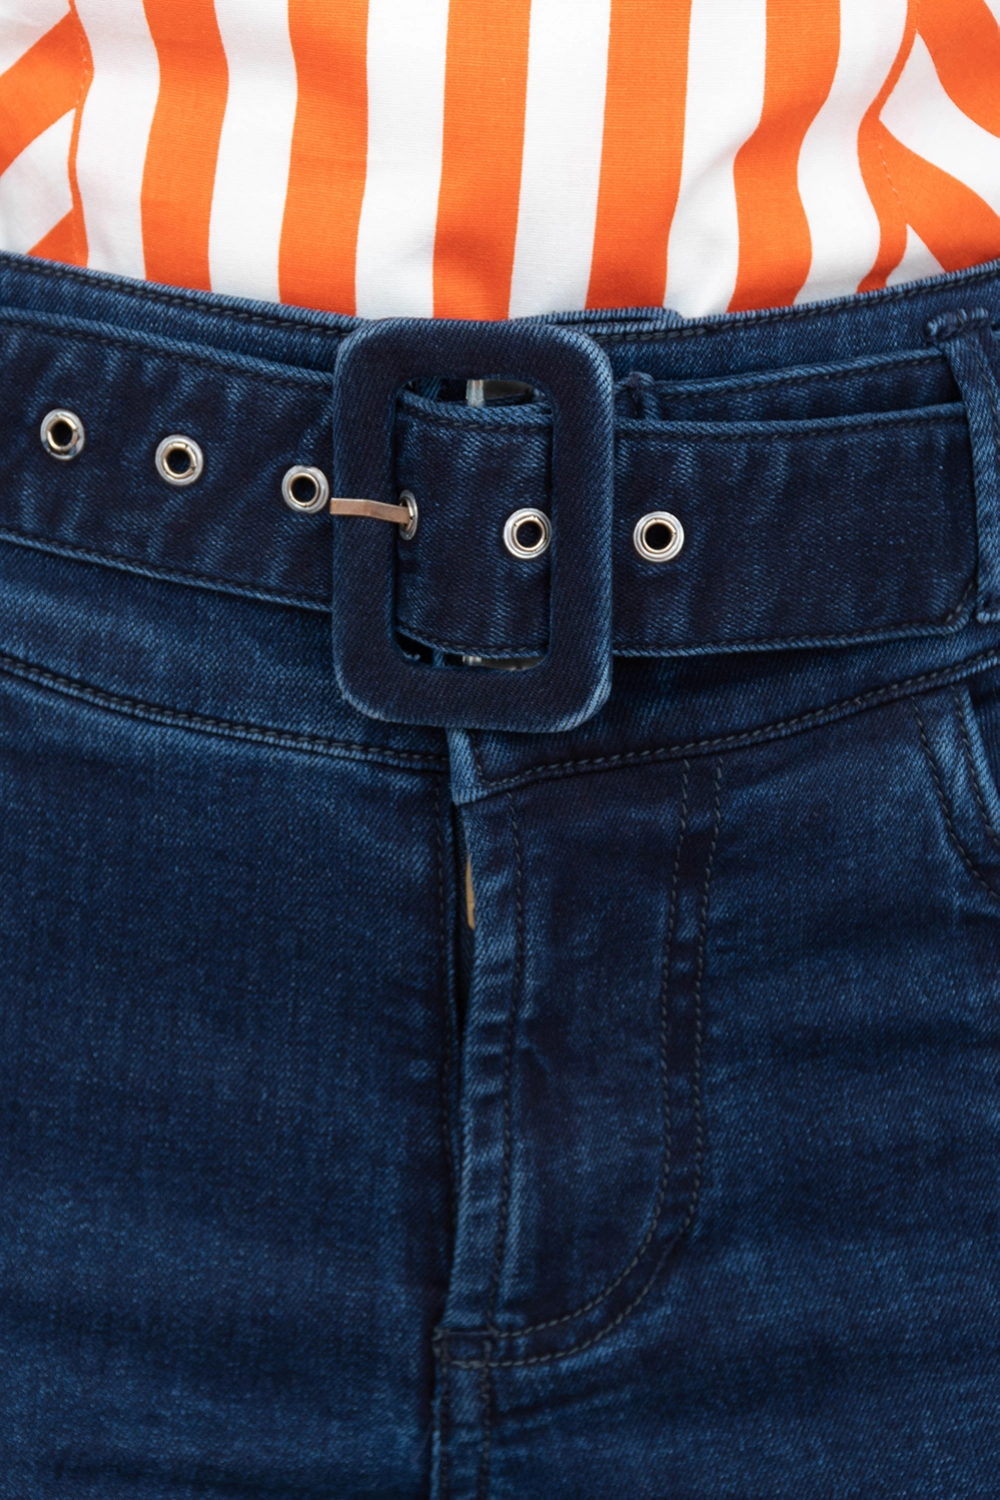 Jeans flare tiro medio con vena cintuirón y hebilla. Azul oscuro talla 16